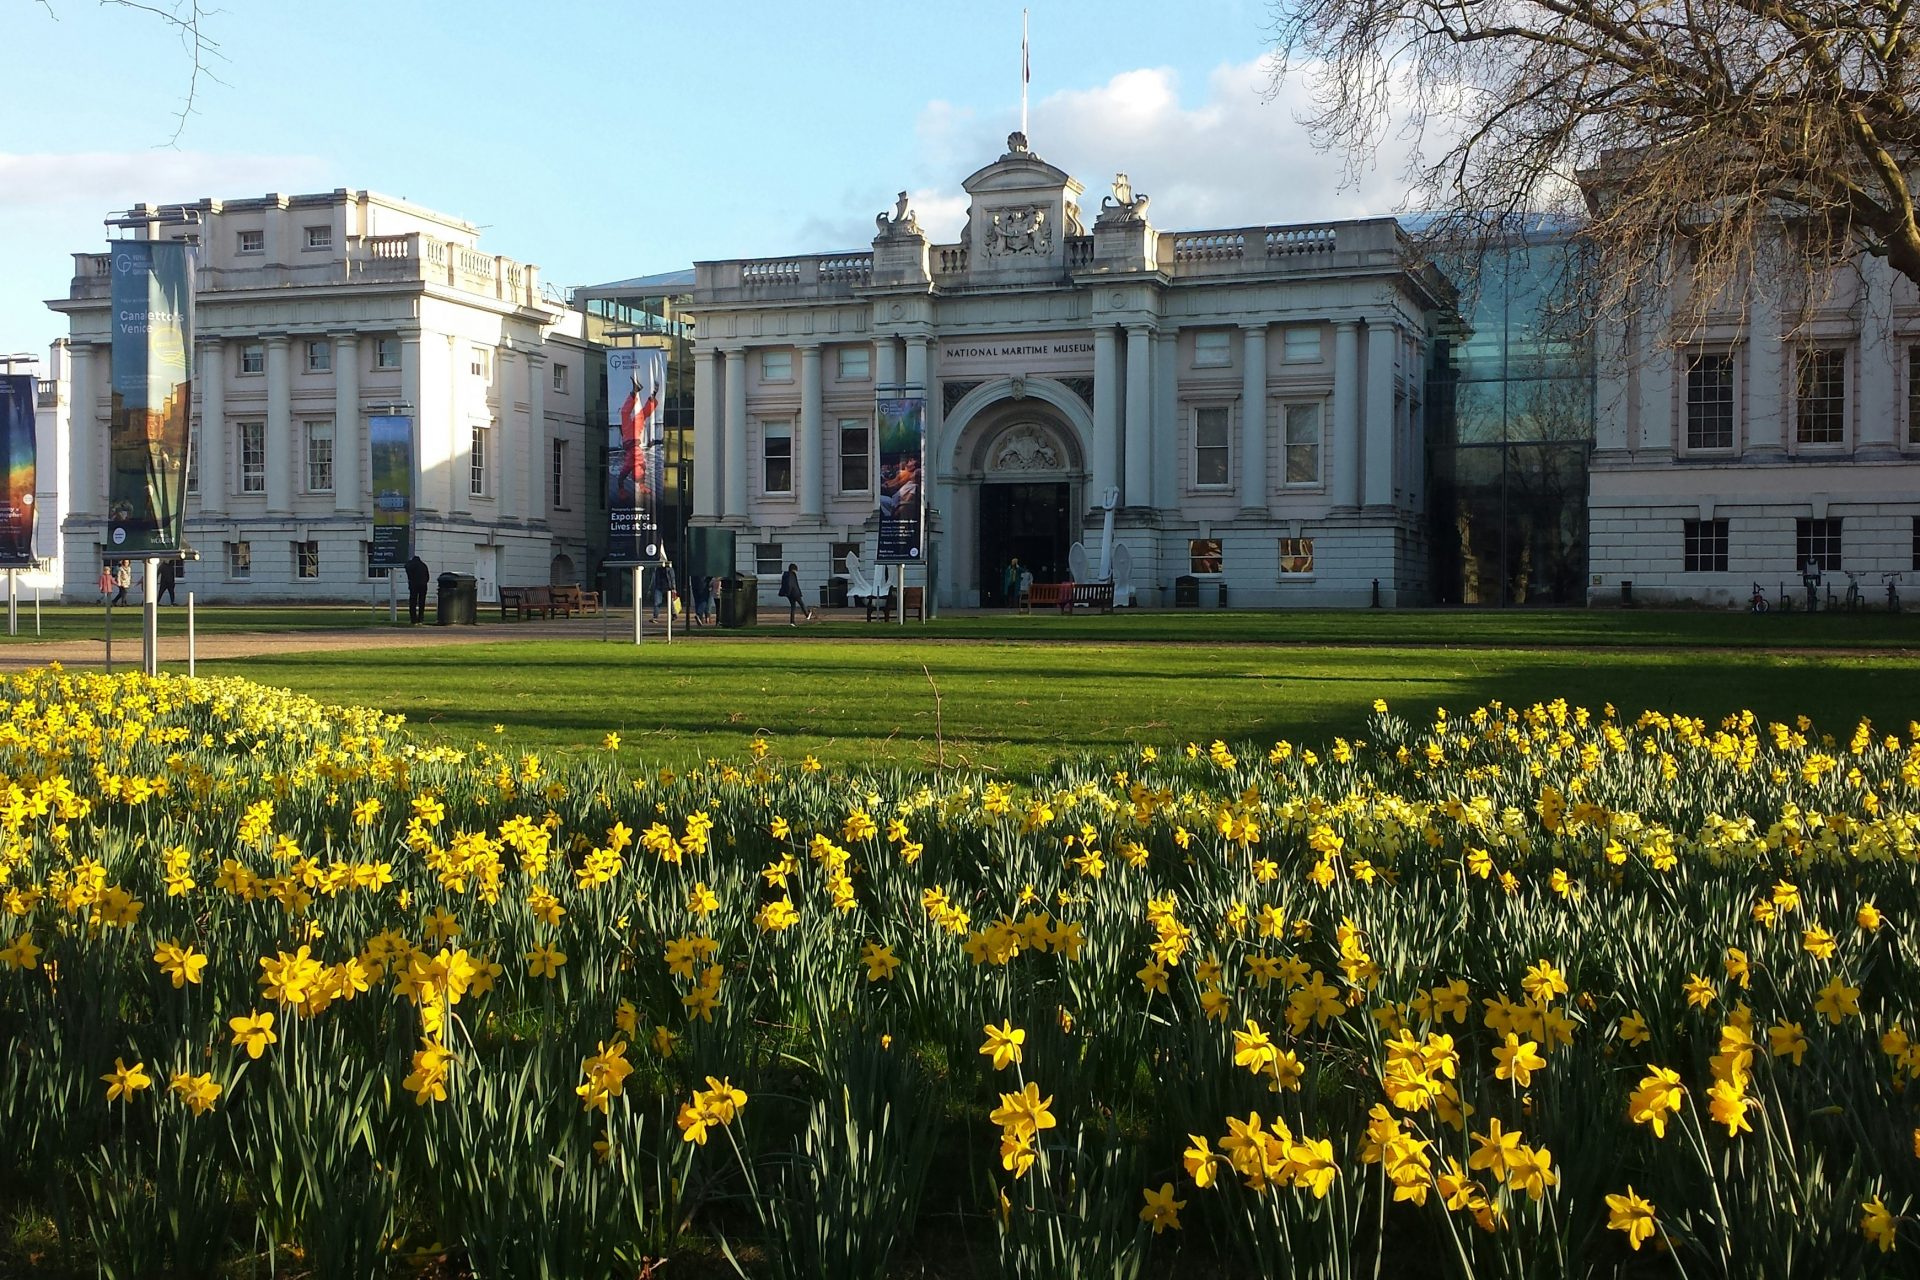 Daffodils in London, UK